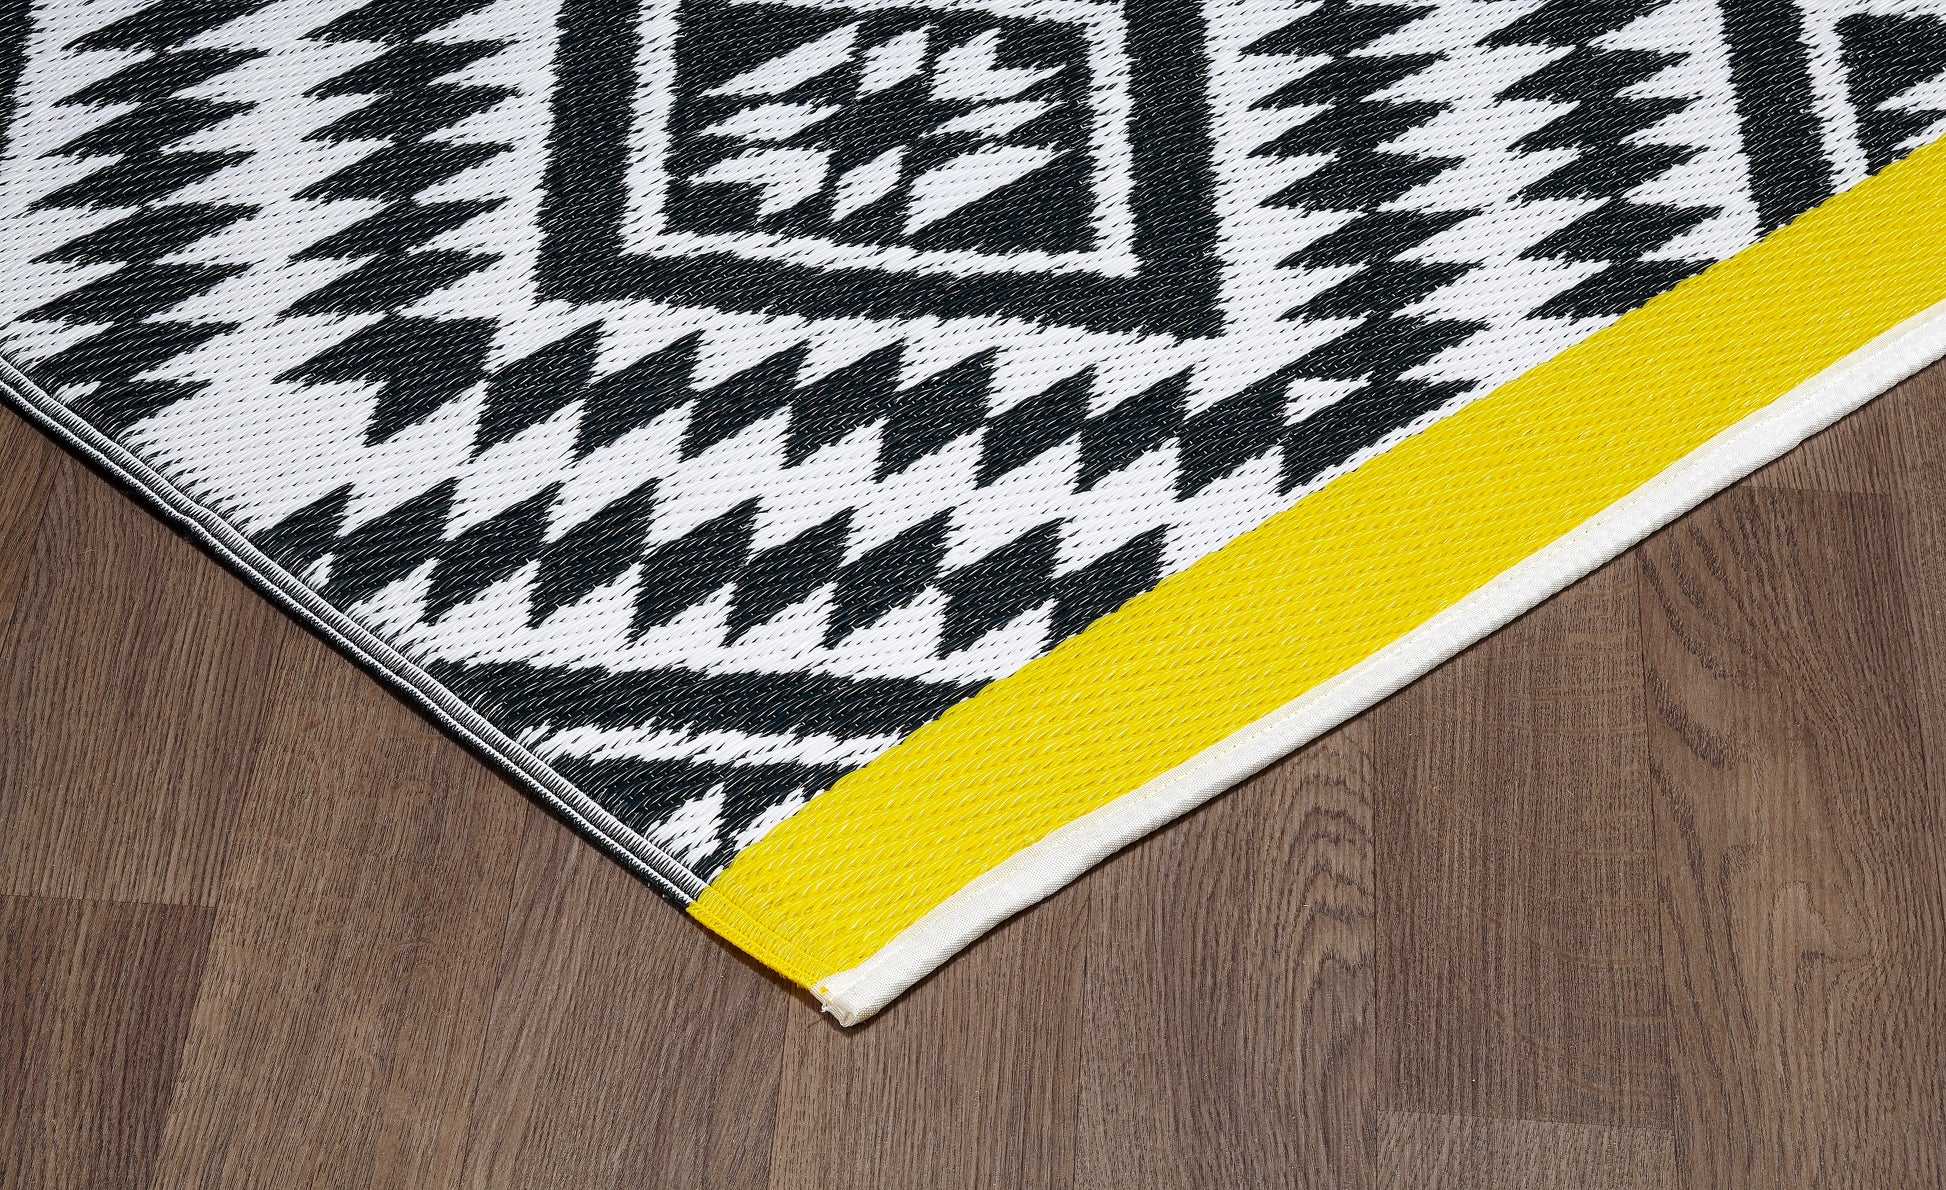 Indoor/Outdoor Black White Yellow Reversible Rug Outdoor Area Rug, Outdoor carpet, outdoor mat, picnic mat